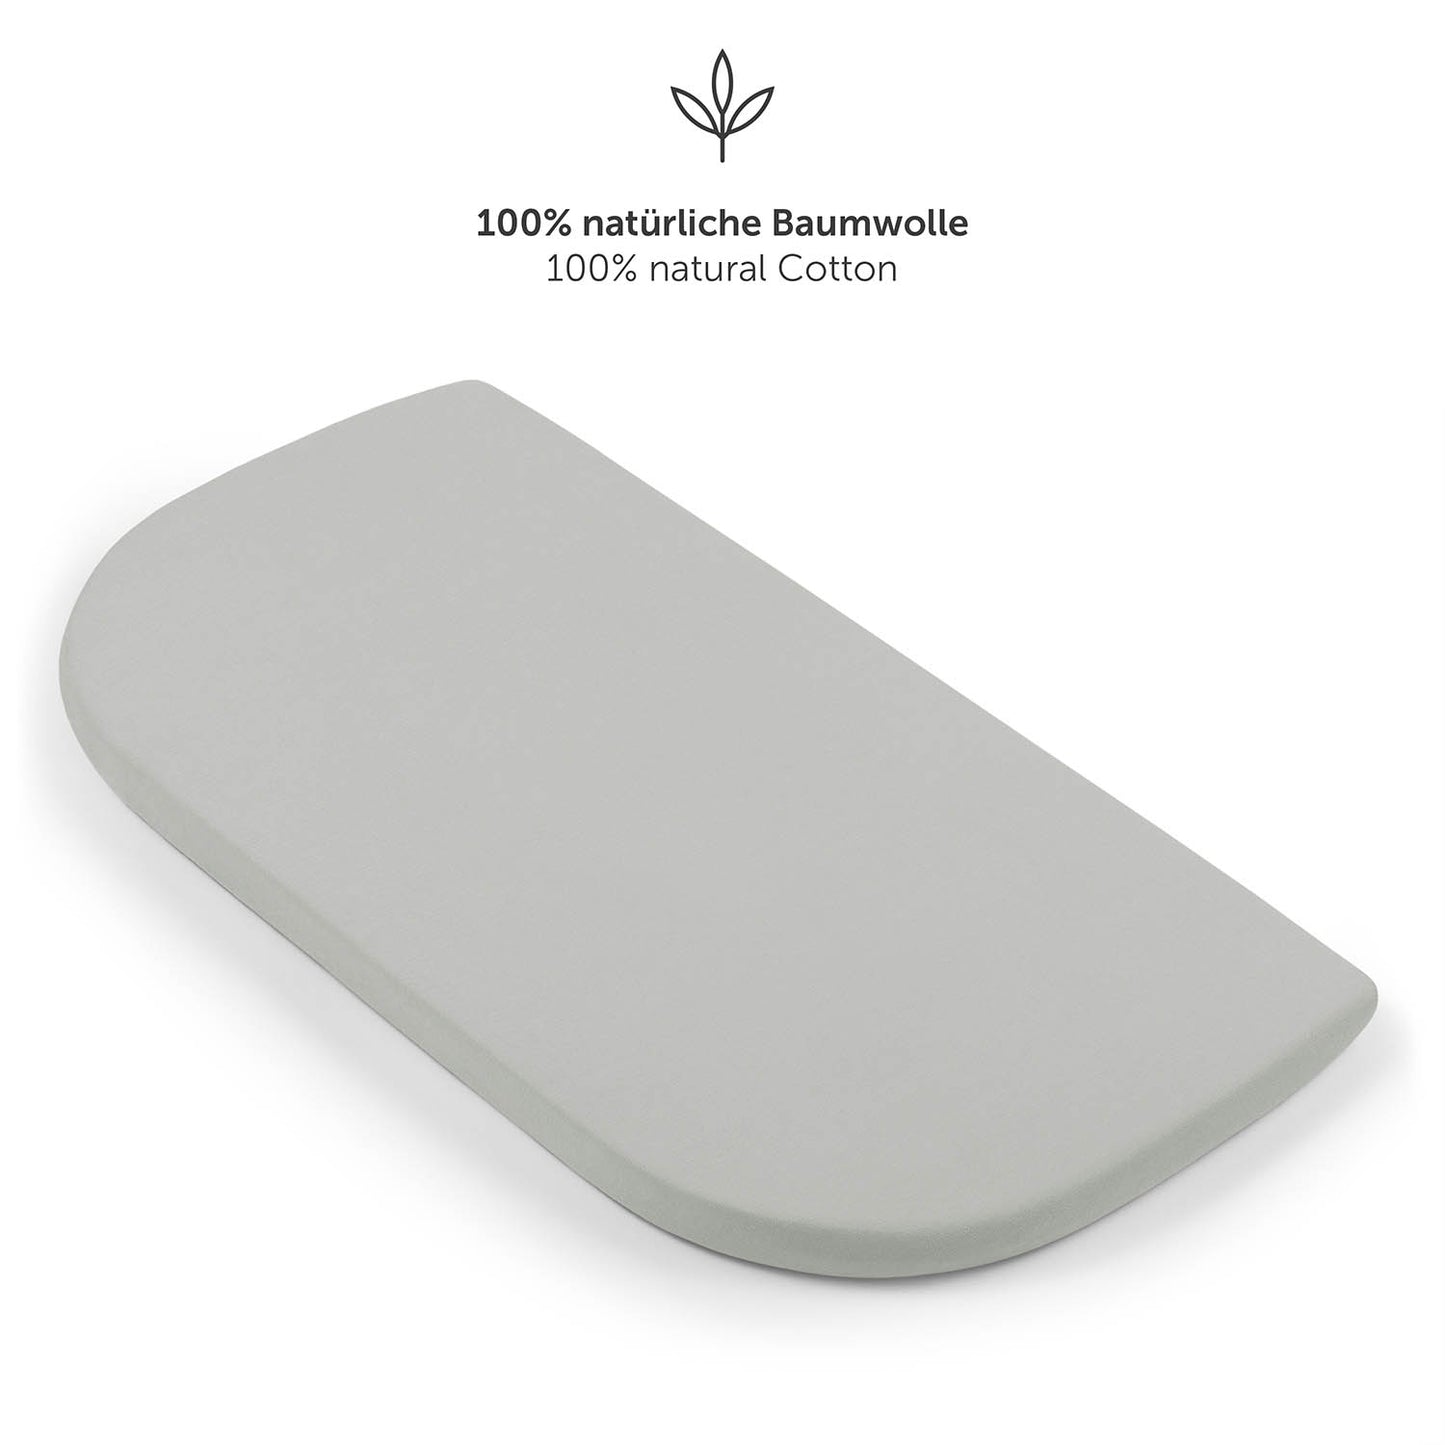 Detailansicht eines grau Spannbetttuchs mit starkem Gummizug und Zusatz von 5 cm für perfekten Sitz.